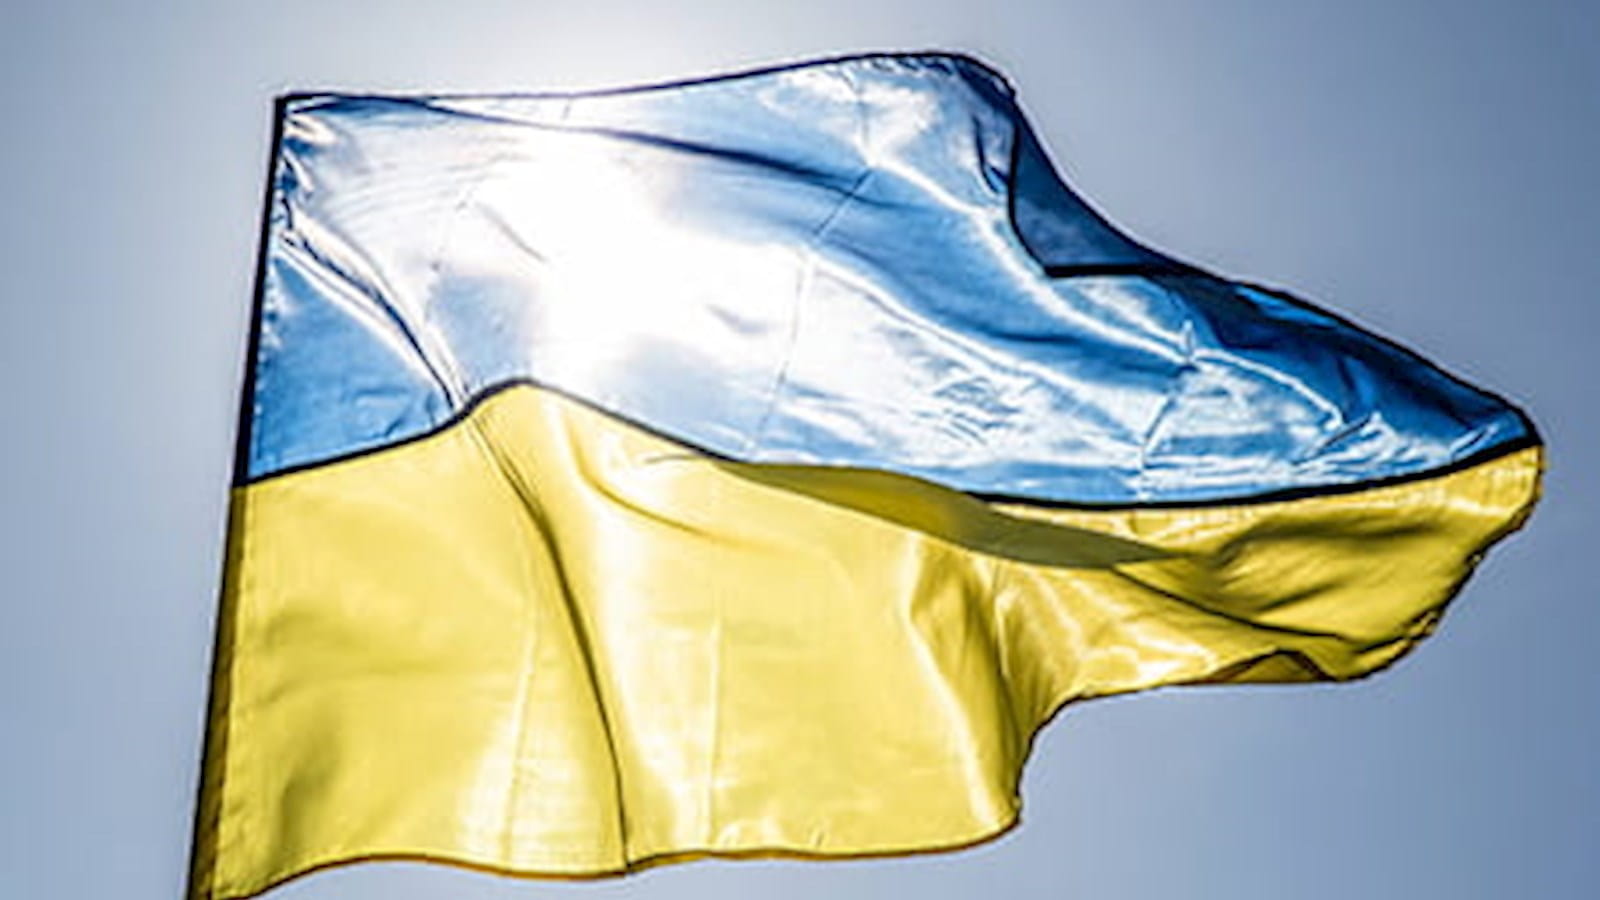 Ukraine and beyond